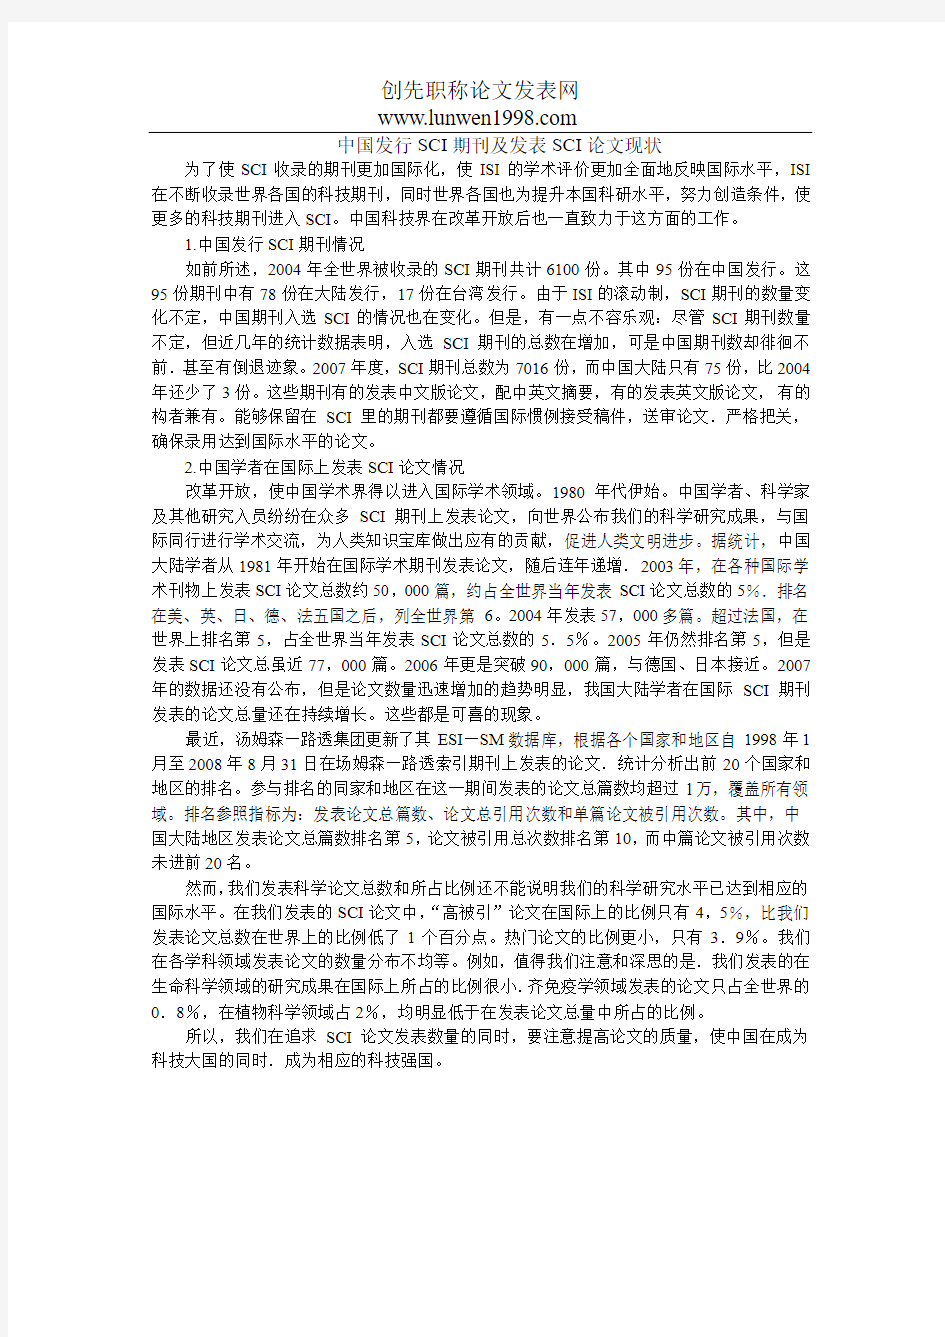 中国发行SCI期刊及发表SCI论文现状